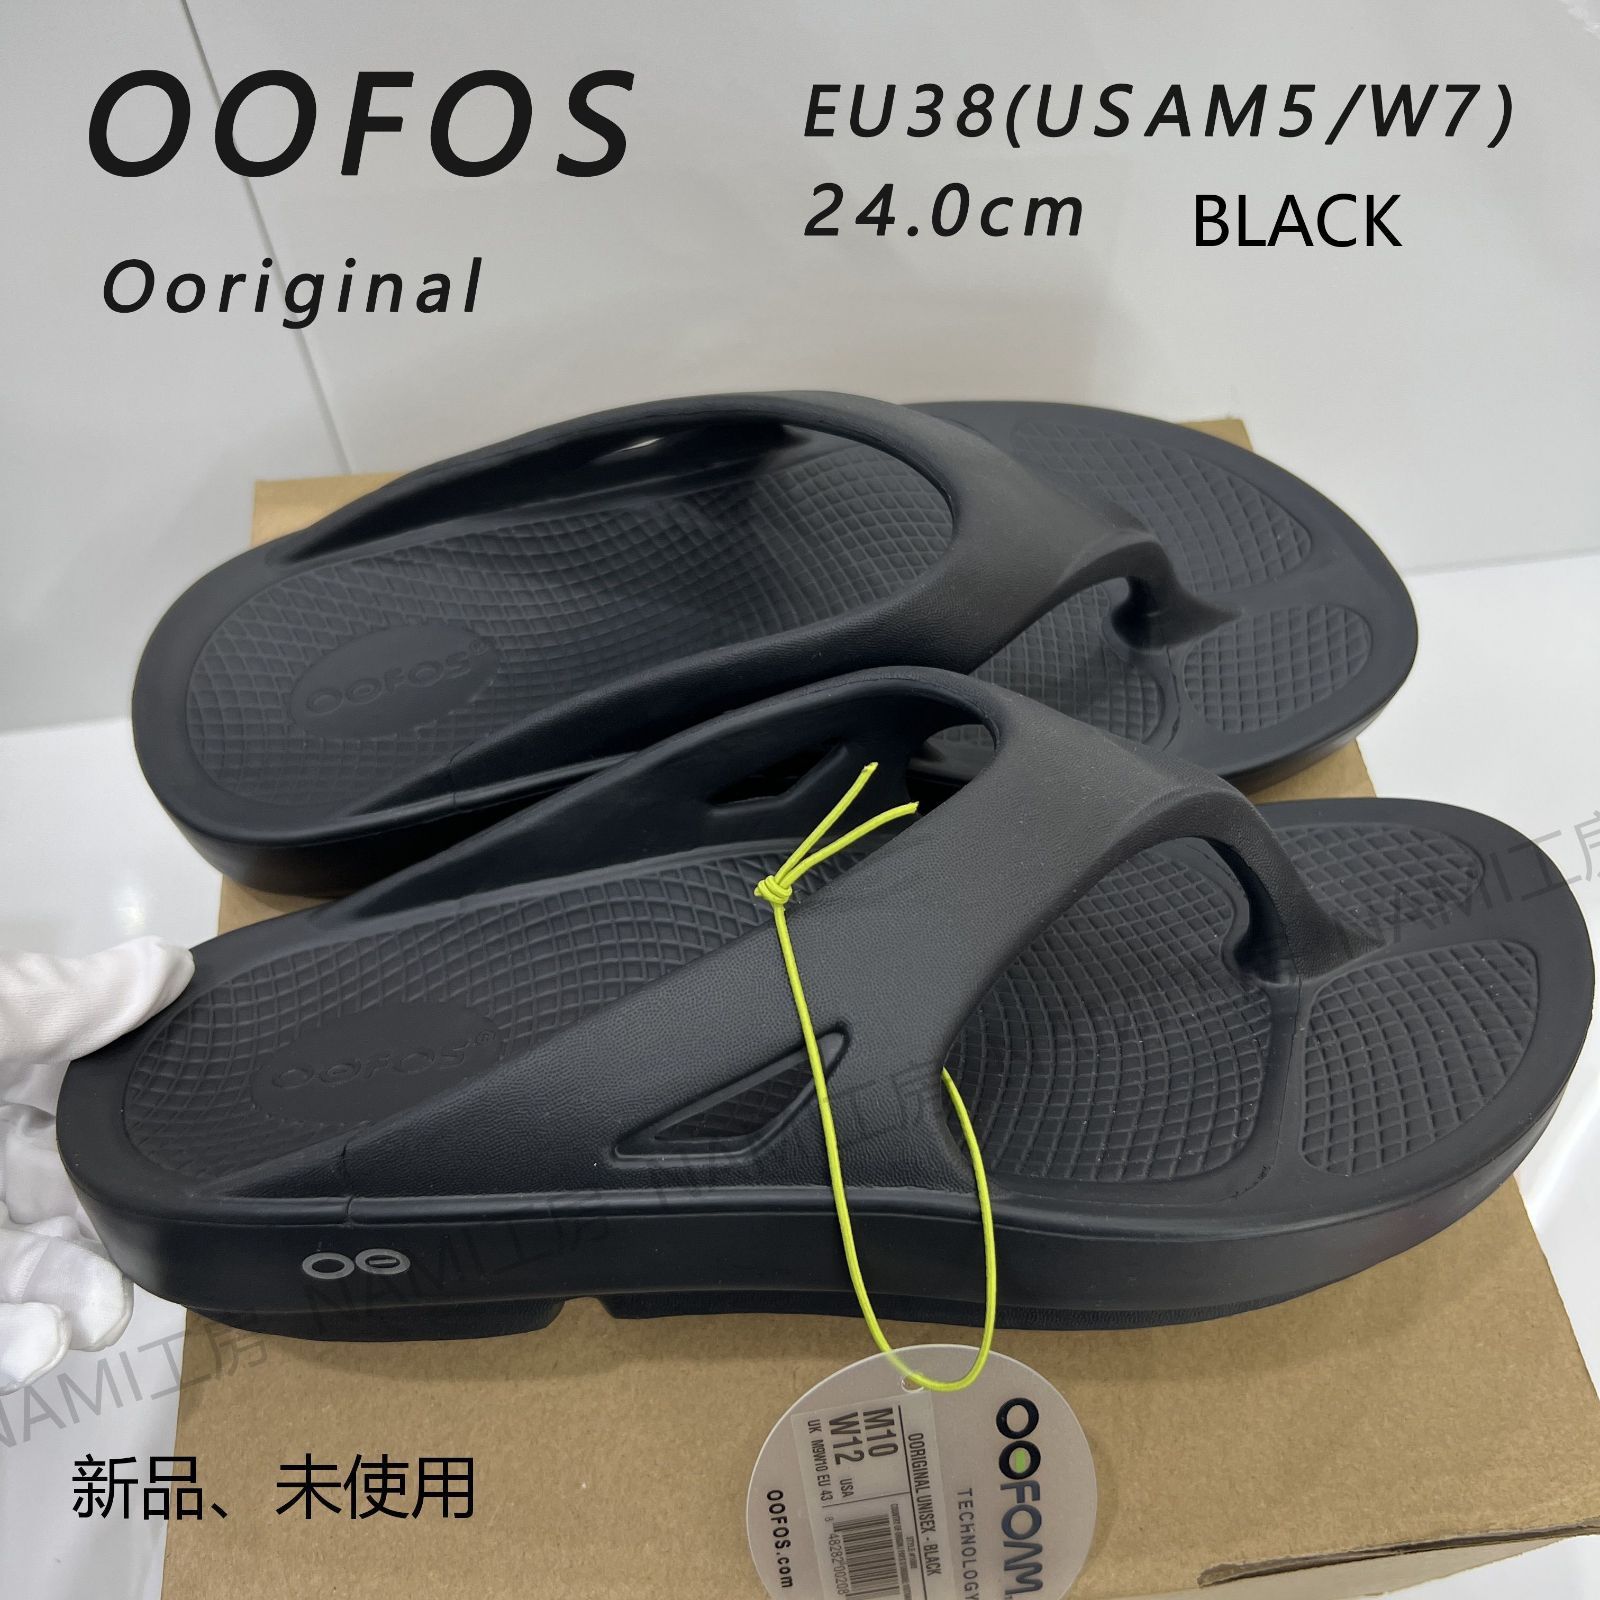 OOFOS Ooriginal ウーフォス オリジナル メンズ レディース男女